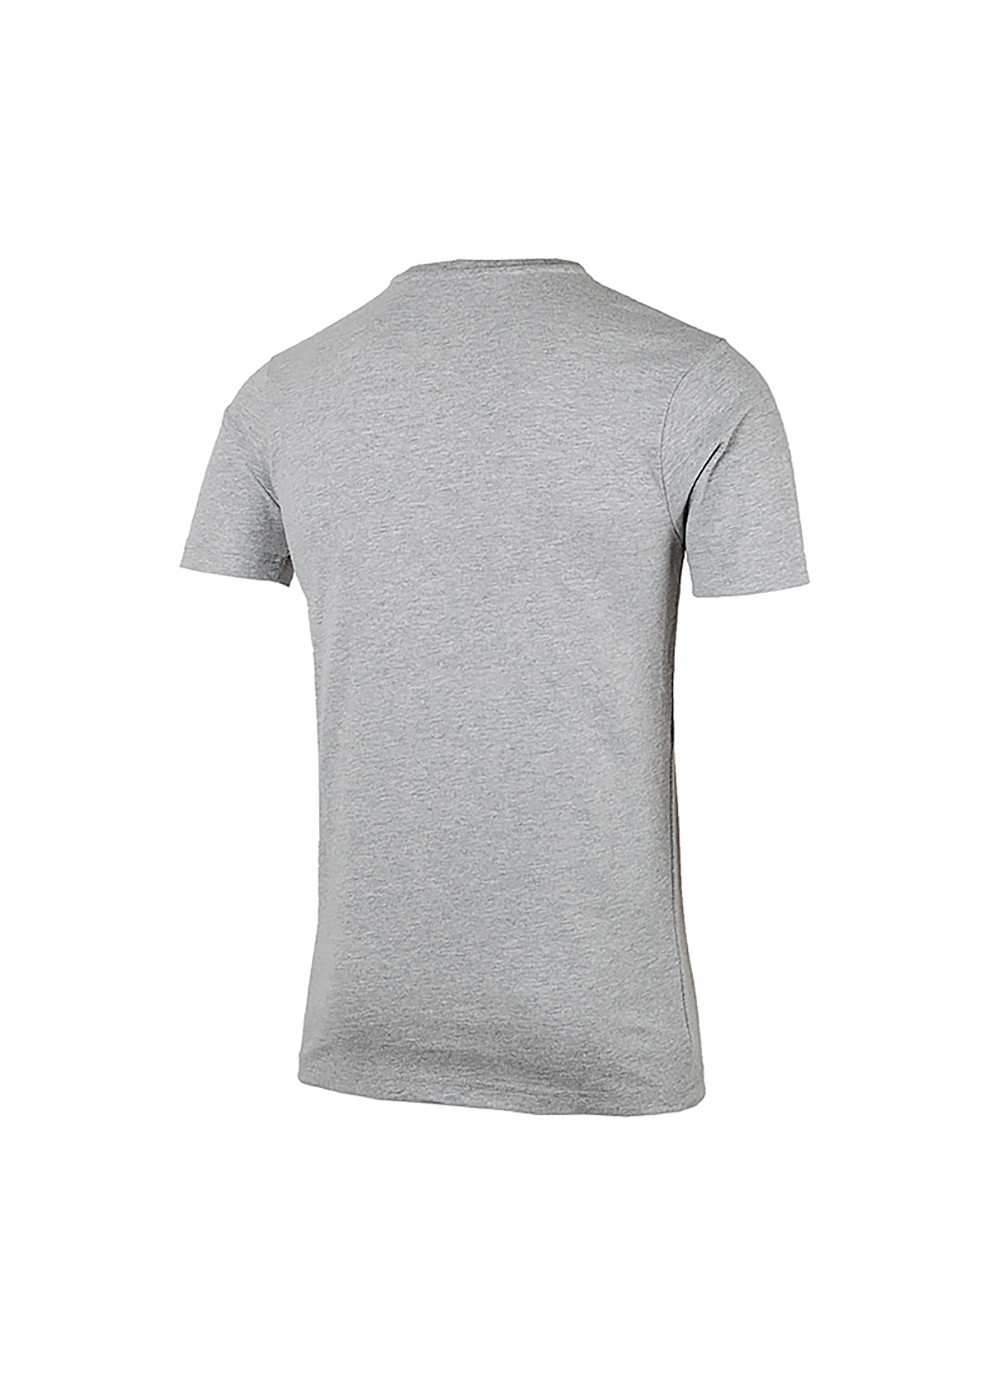 Серая мужская футболка voodoo серый m (shb06835-grey-marl m) Ellesse